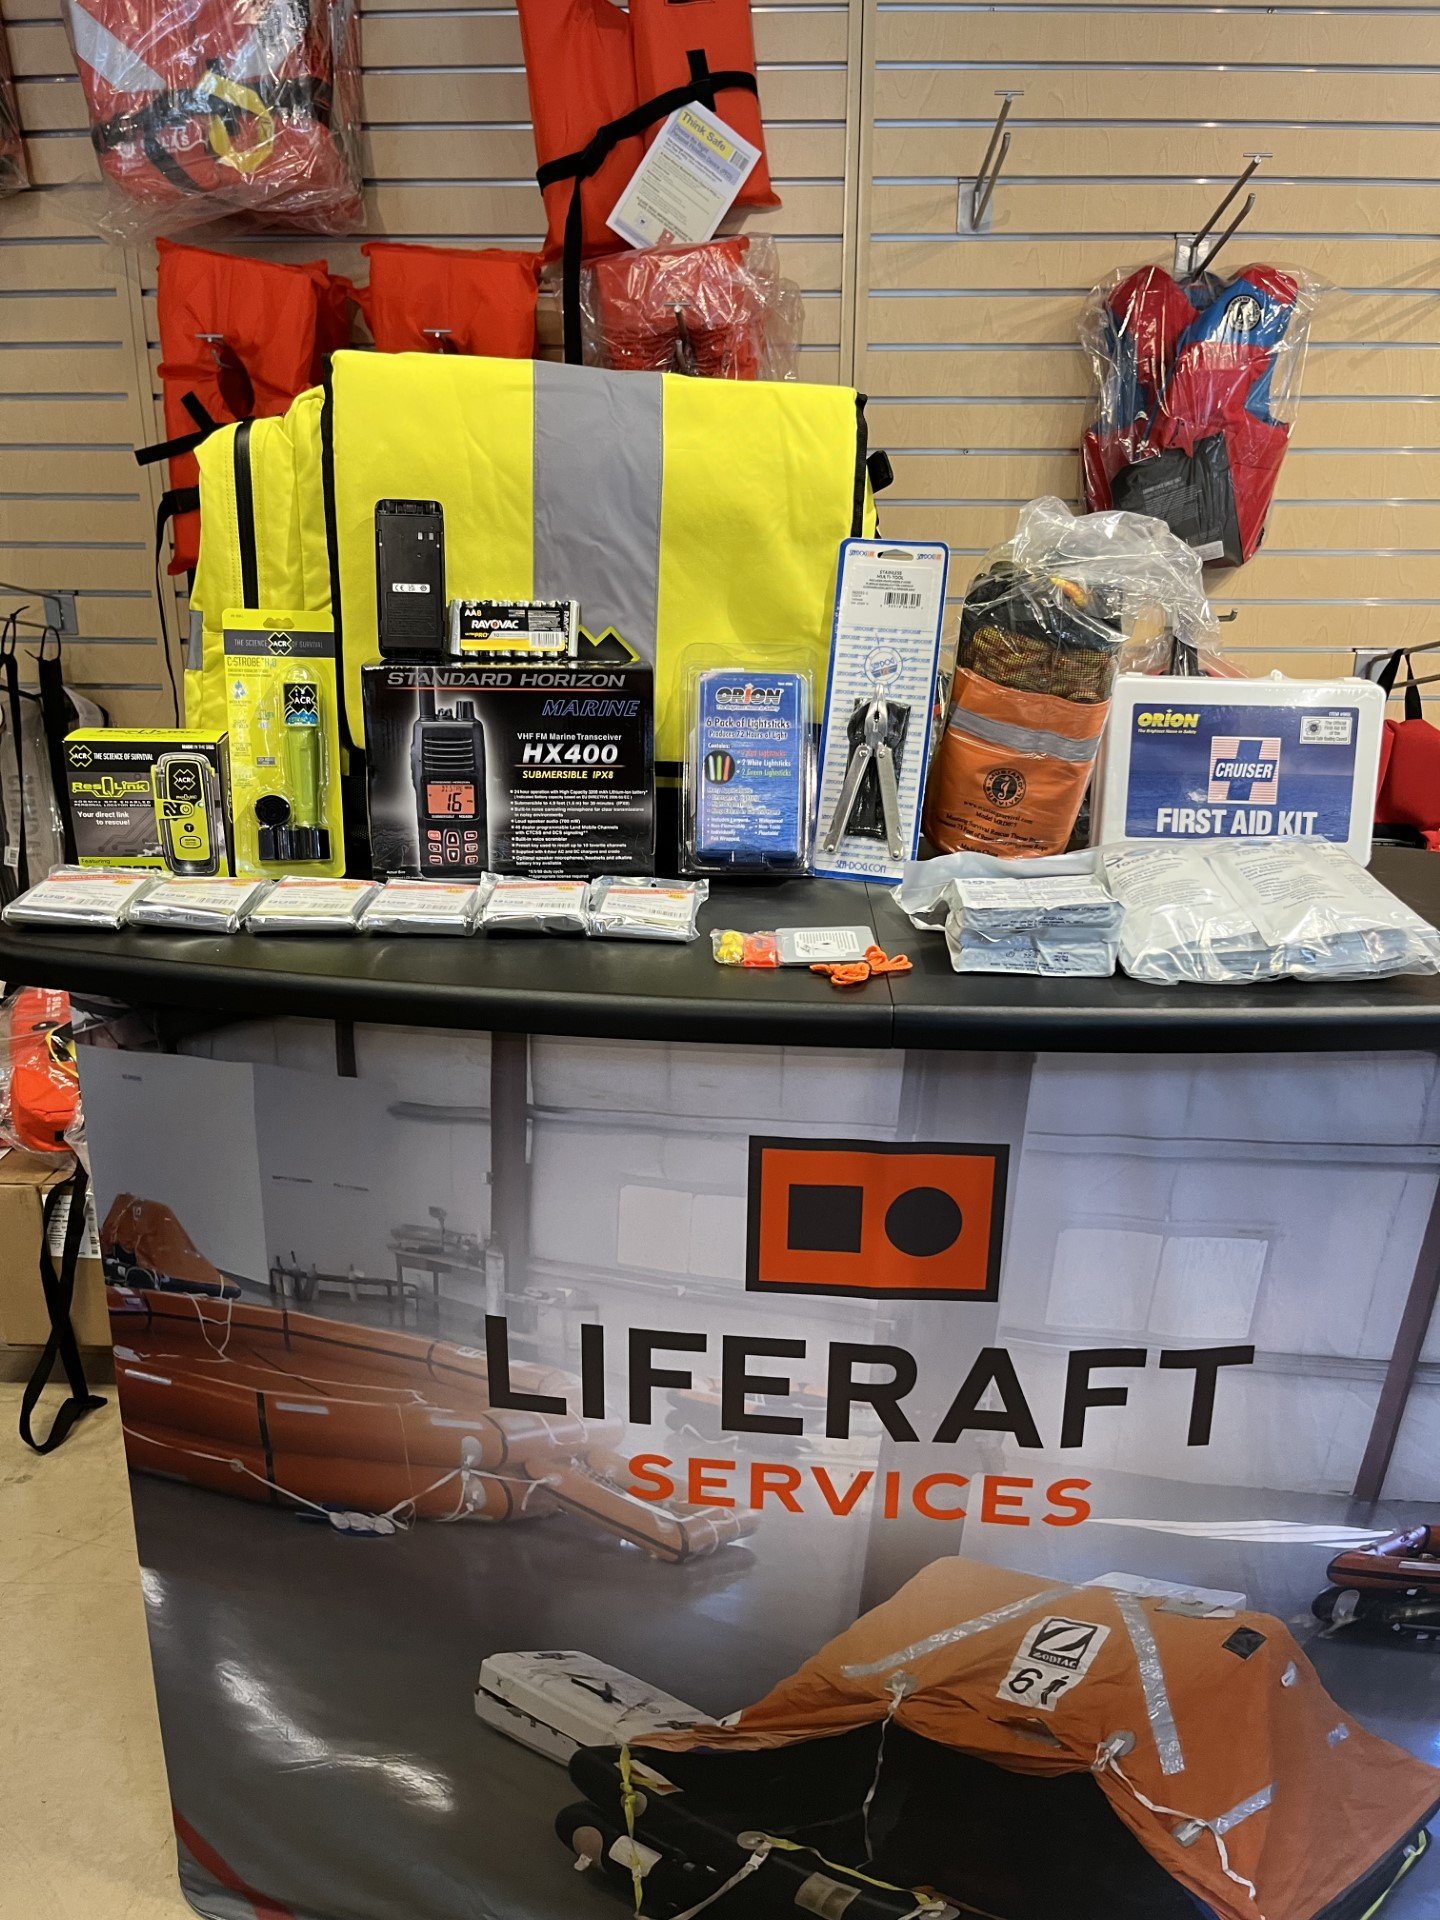 Inflatable waterproof bag survival emergency kit – Flexprin